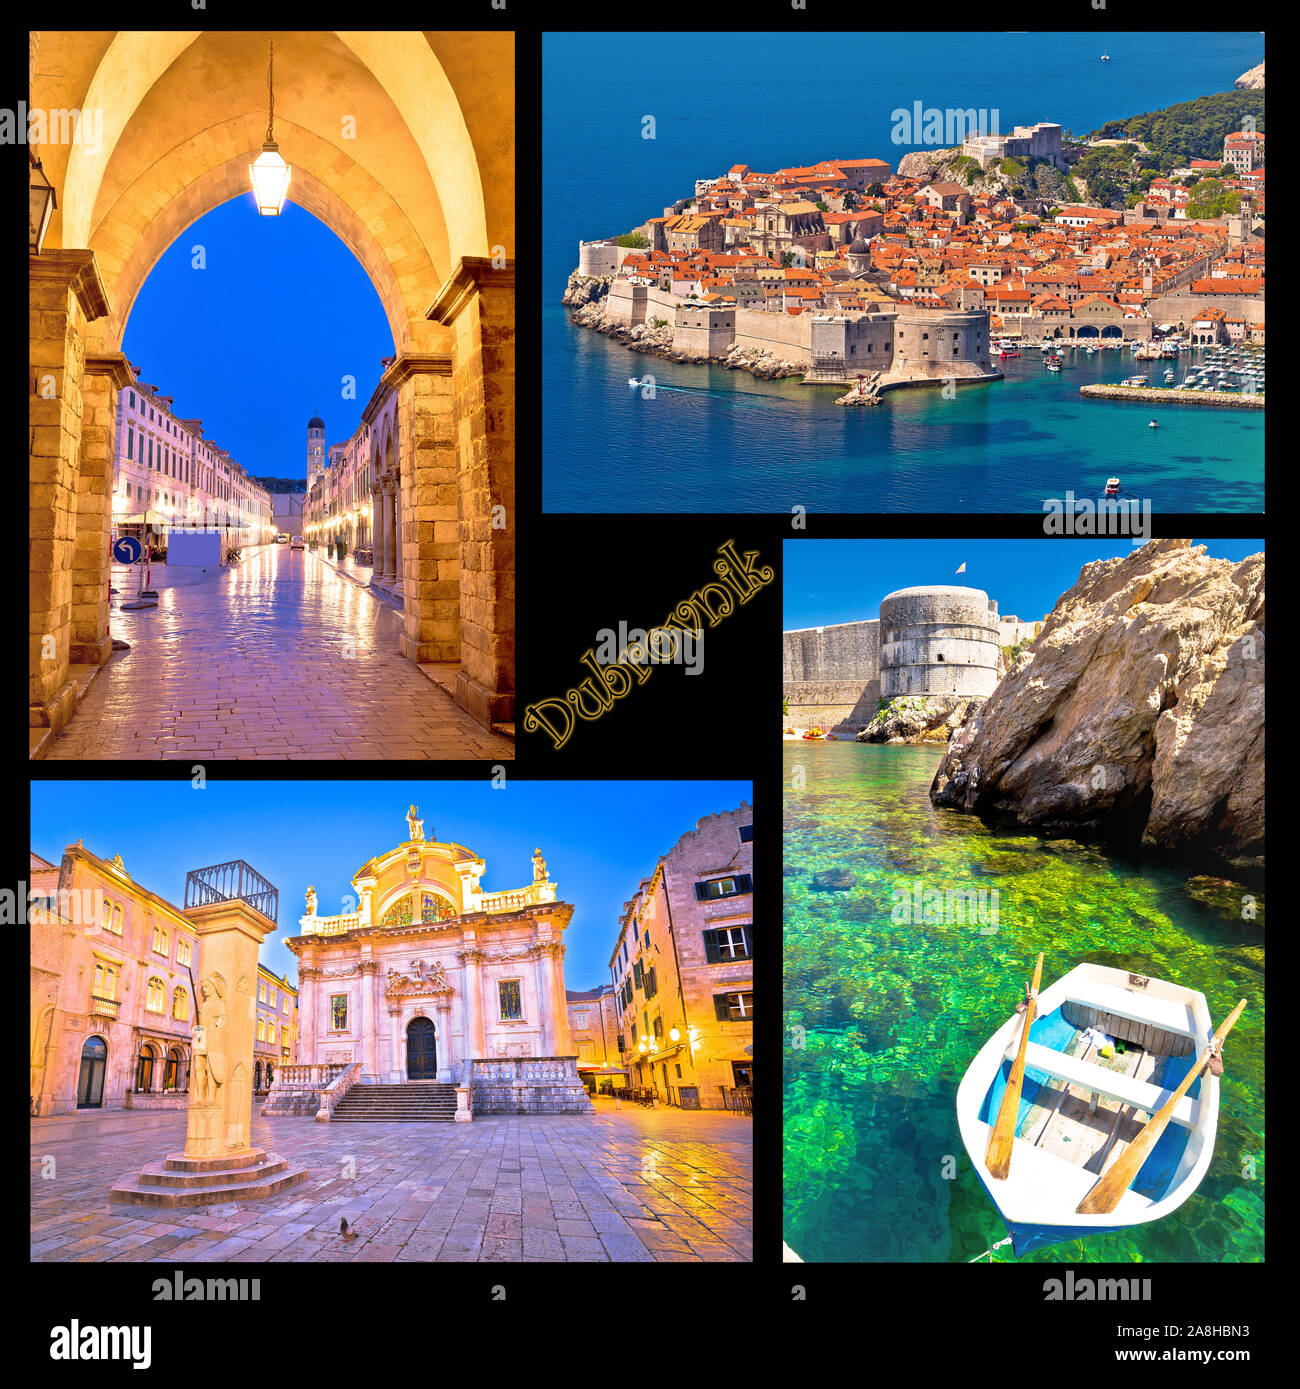 Dubrovnik cartolina collage i punti di riferimento con etichetta, famosa destinazione turistica in Dalmazia, Croazia Foto Stock